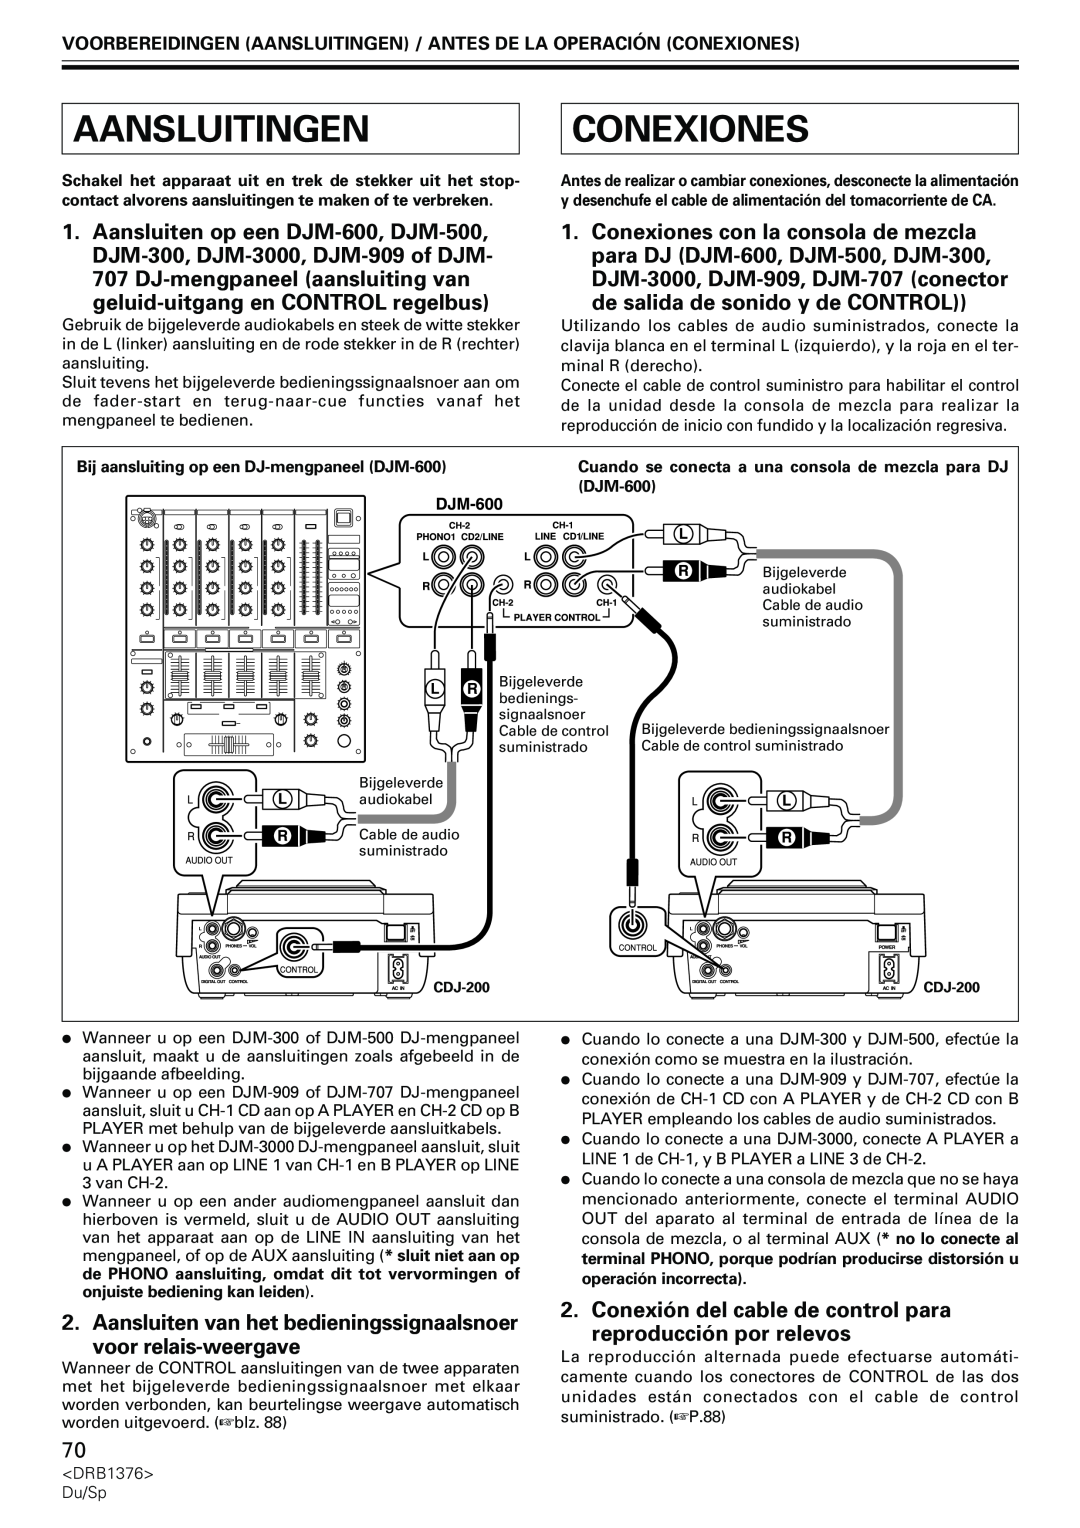 Pioneer CDJ-200 manual Aansluitingen, Conexiones, geluid-uitgangen CONTROL regelbus, de salida de sonido y de CONTROL 